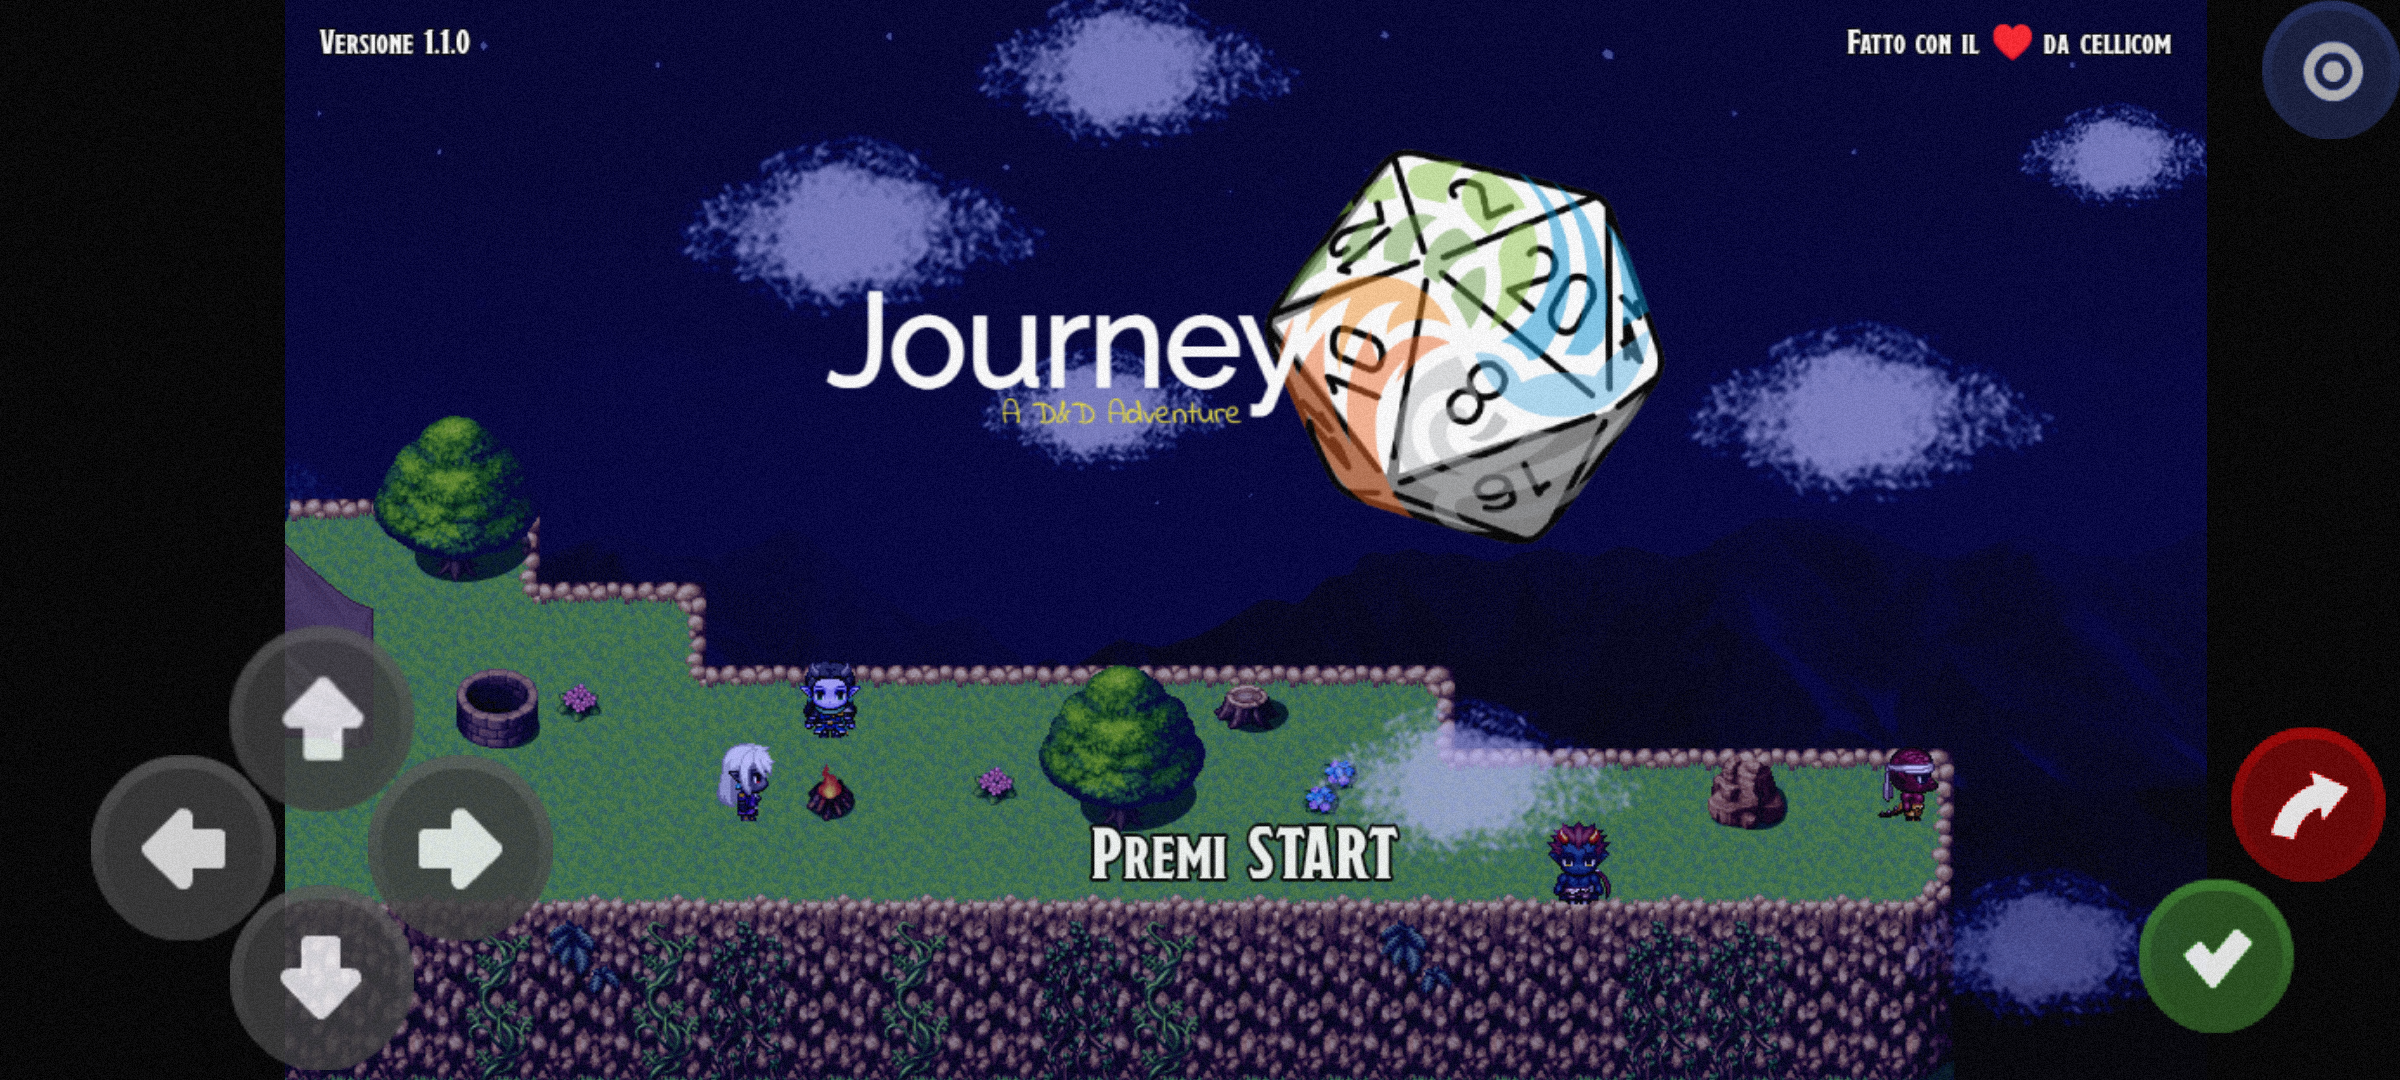 Screenshot 1 of Journey - A D&D Adventure 1.1.1